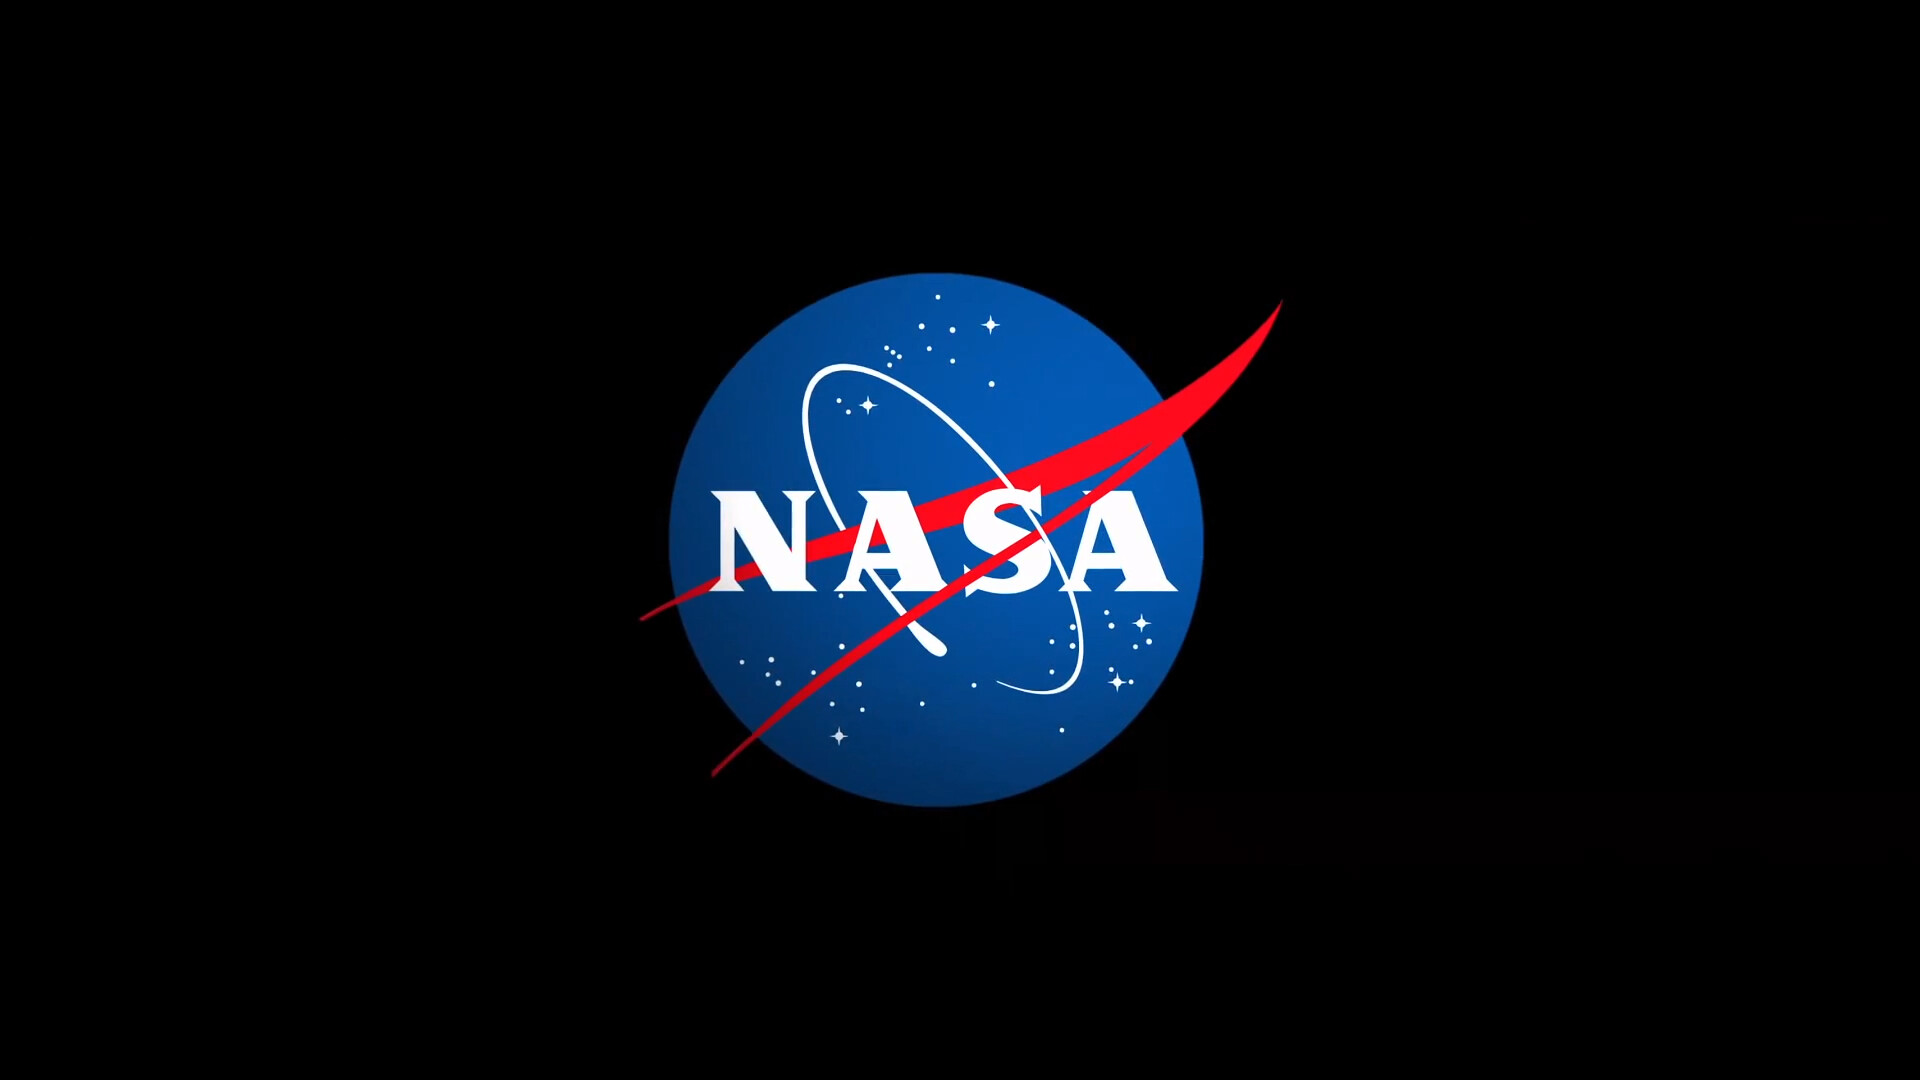 NASA meatball